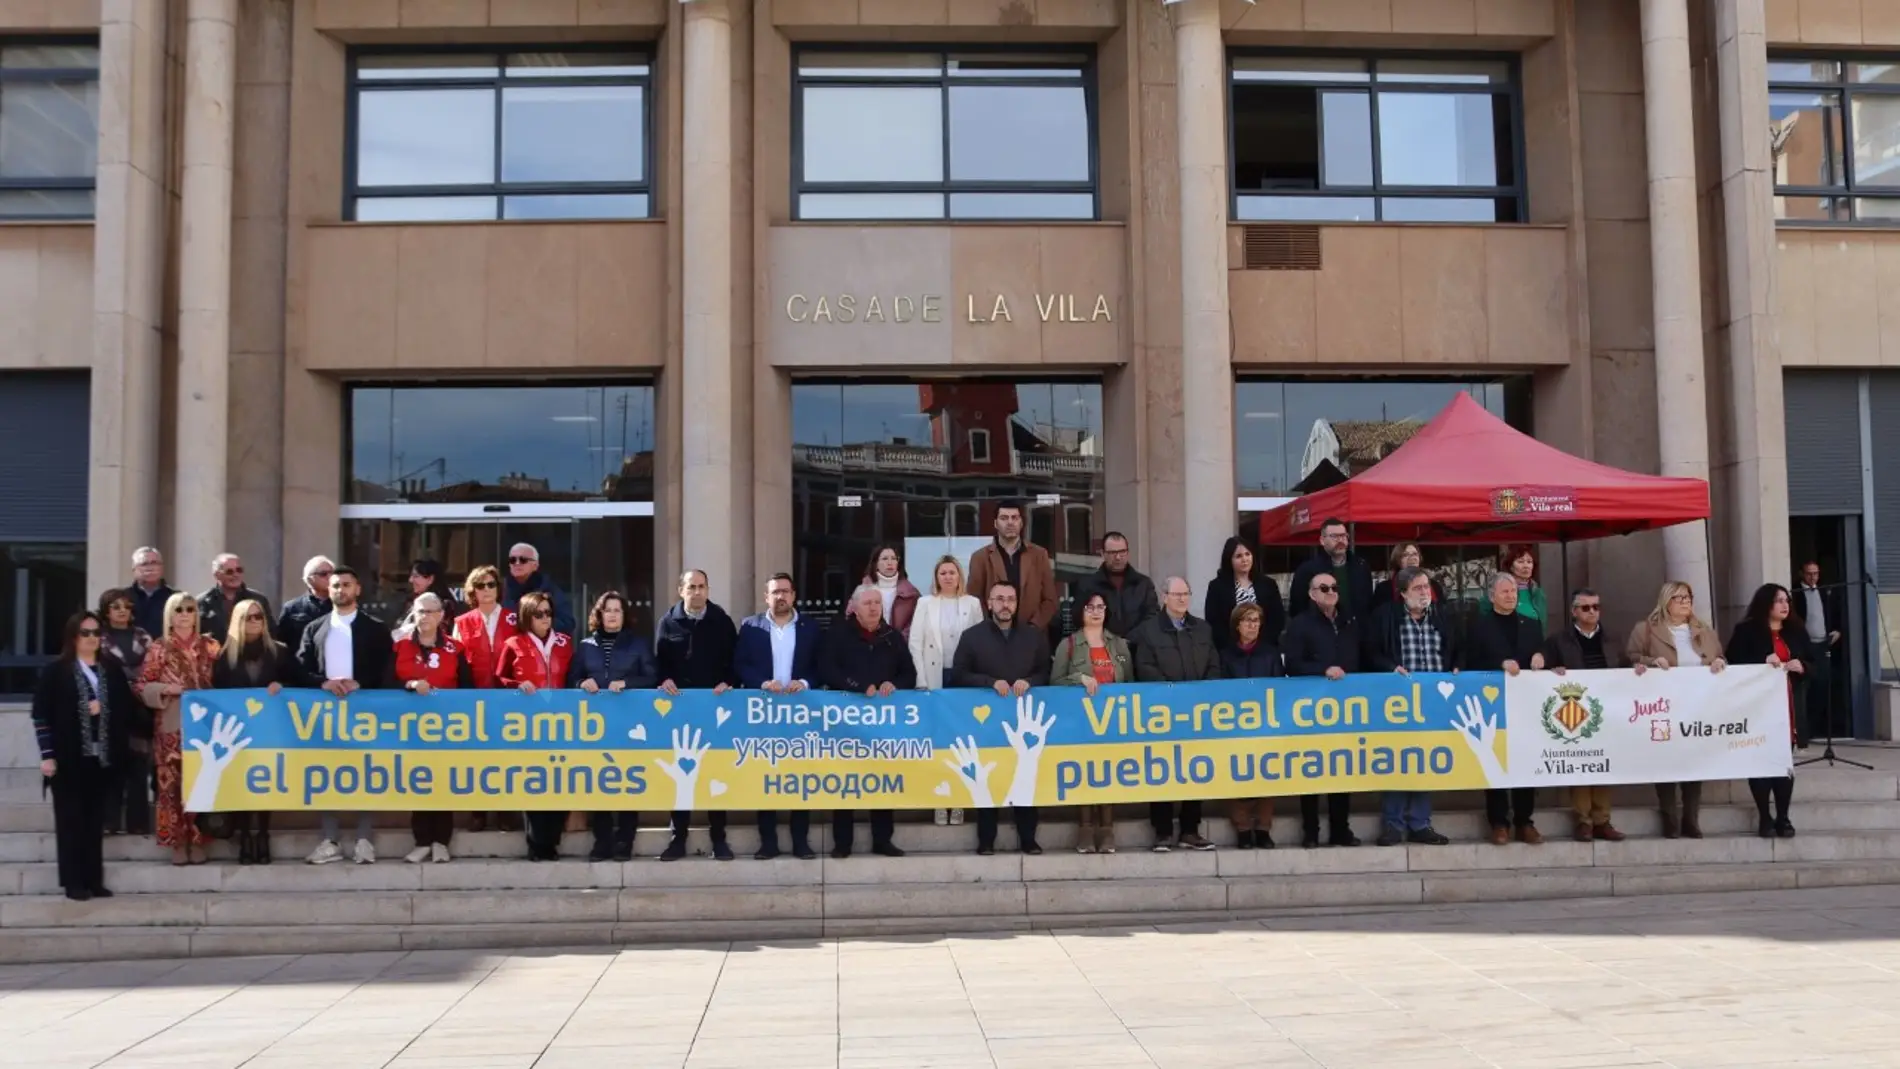 Vila-real guarda cinco minutos de silencio en solidaridad con el pueblo ucraniano